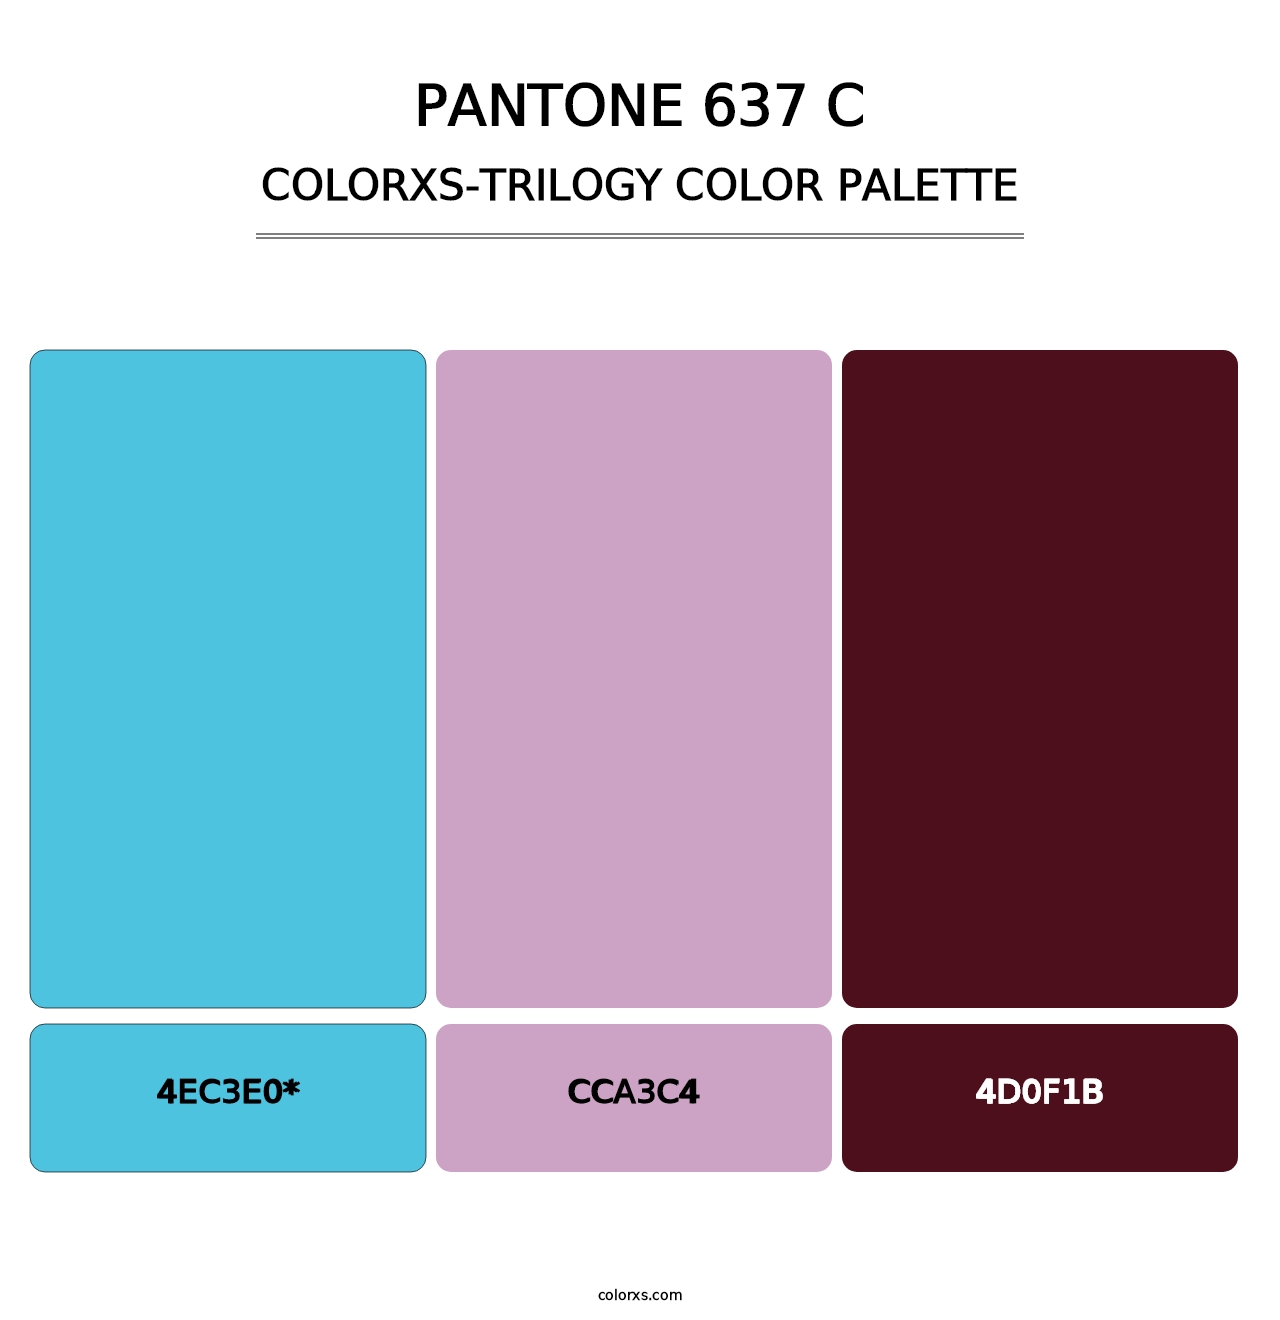 PANTONE 637 C - Colorxs Trilogy Palette